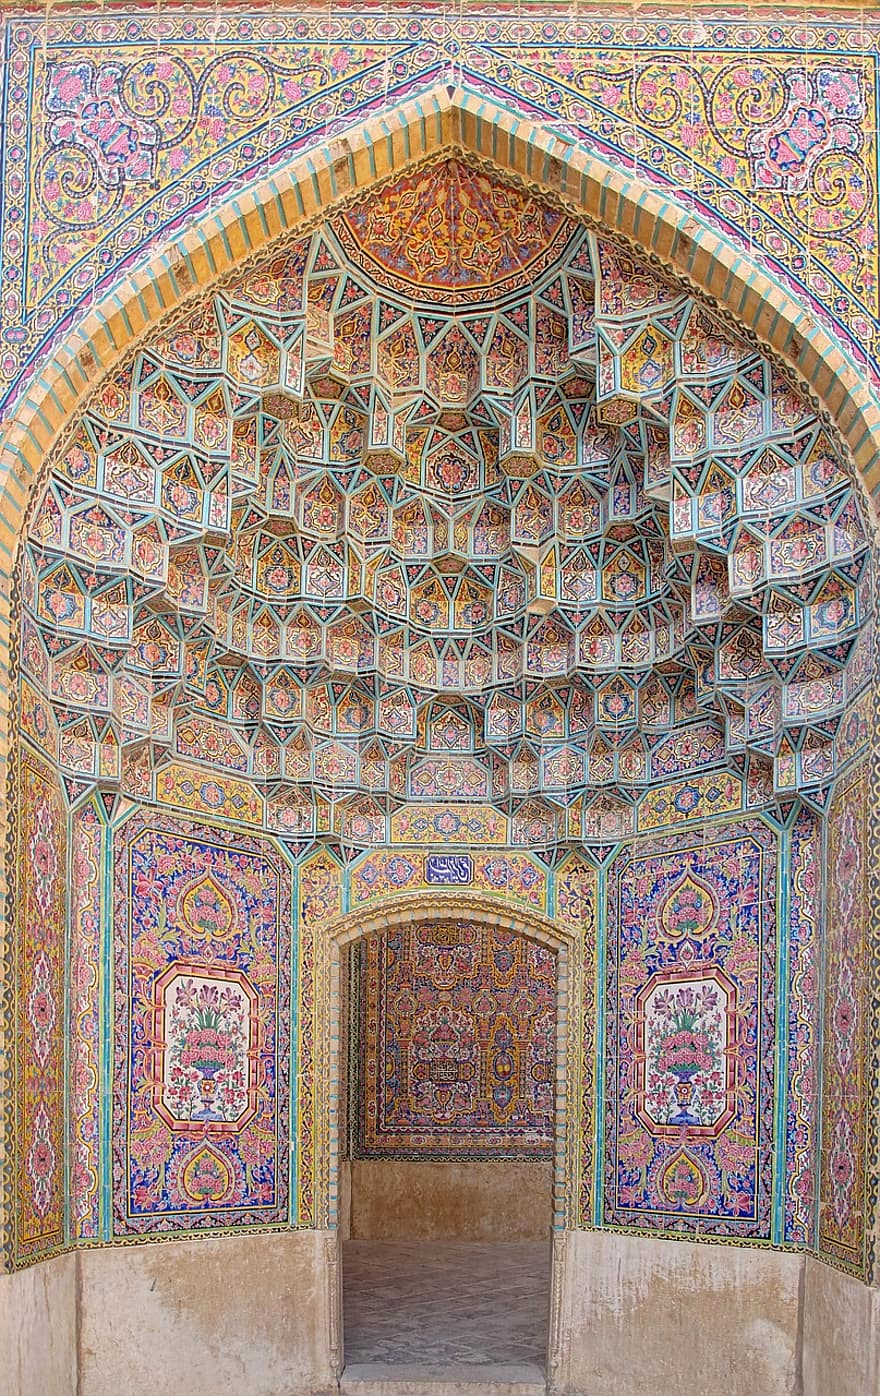 อิหร่าน, เปอร์เซีย, Shiraz, วัฒนธรรม, สถาปัตยกรรม, เครื่องประดับ, แบบแผน, สถานที่ที่มีชื่อเสียง, ศาสนา, โมเสก, ประวัติศาสตร์